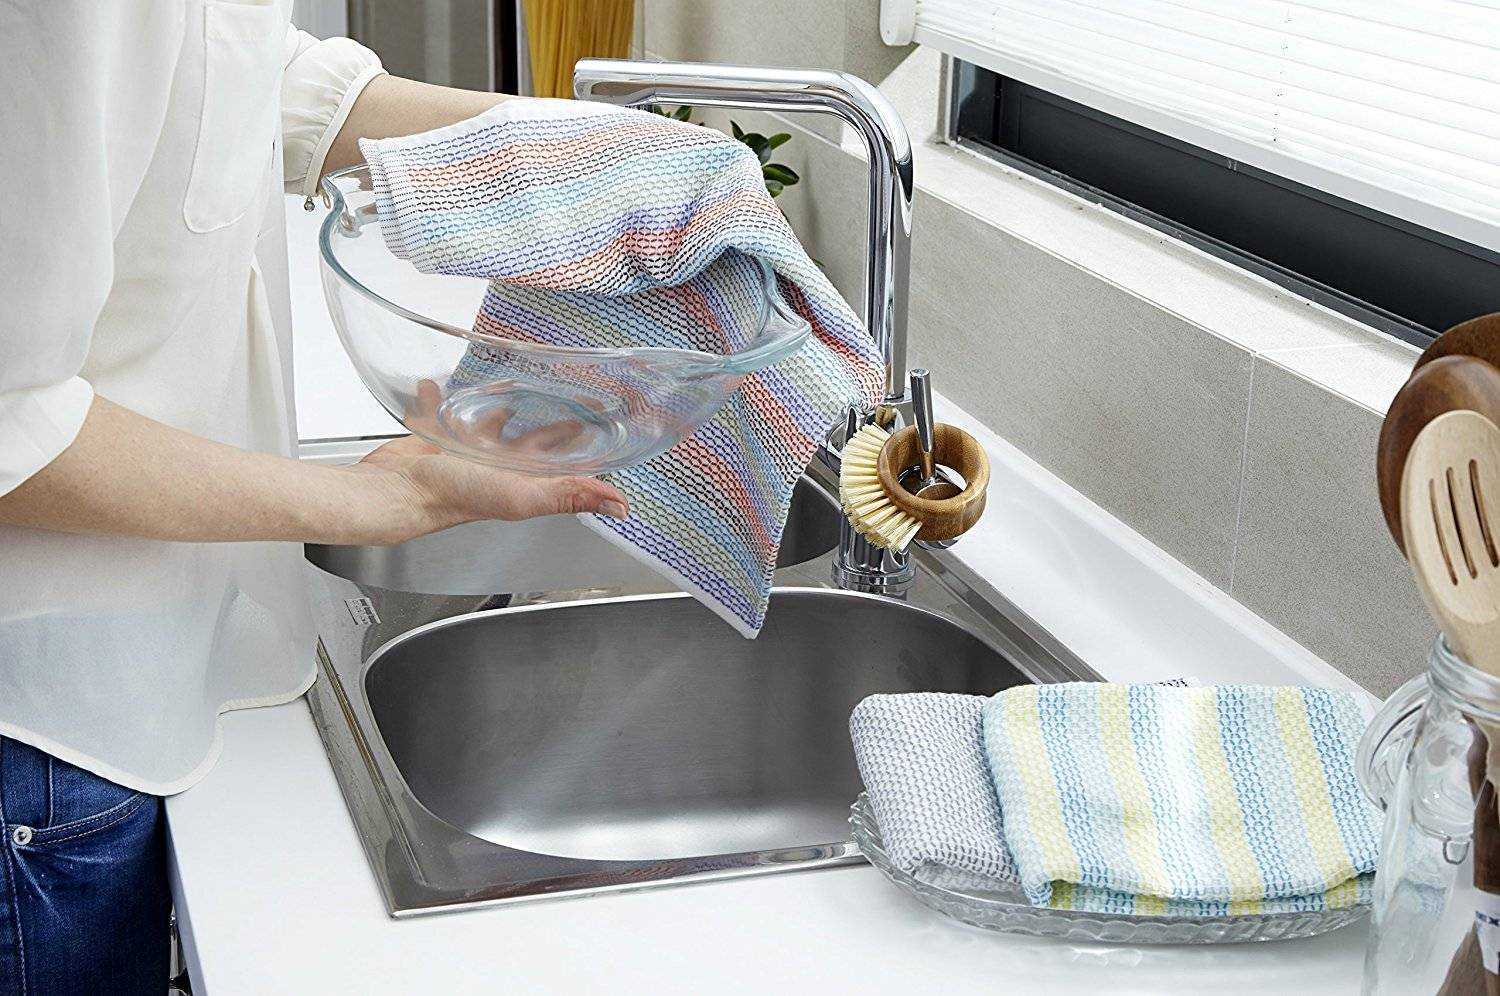 Сколько стирать полотенце